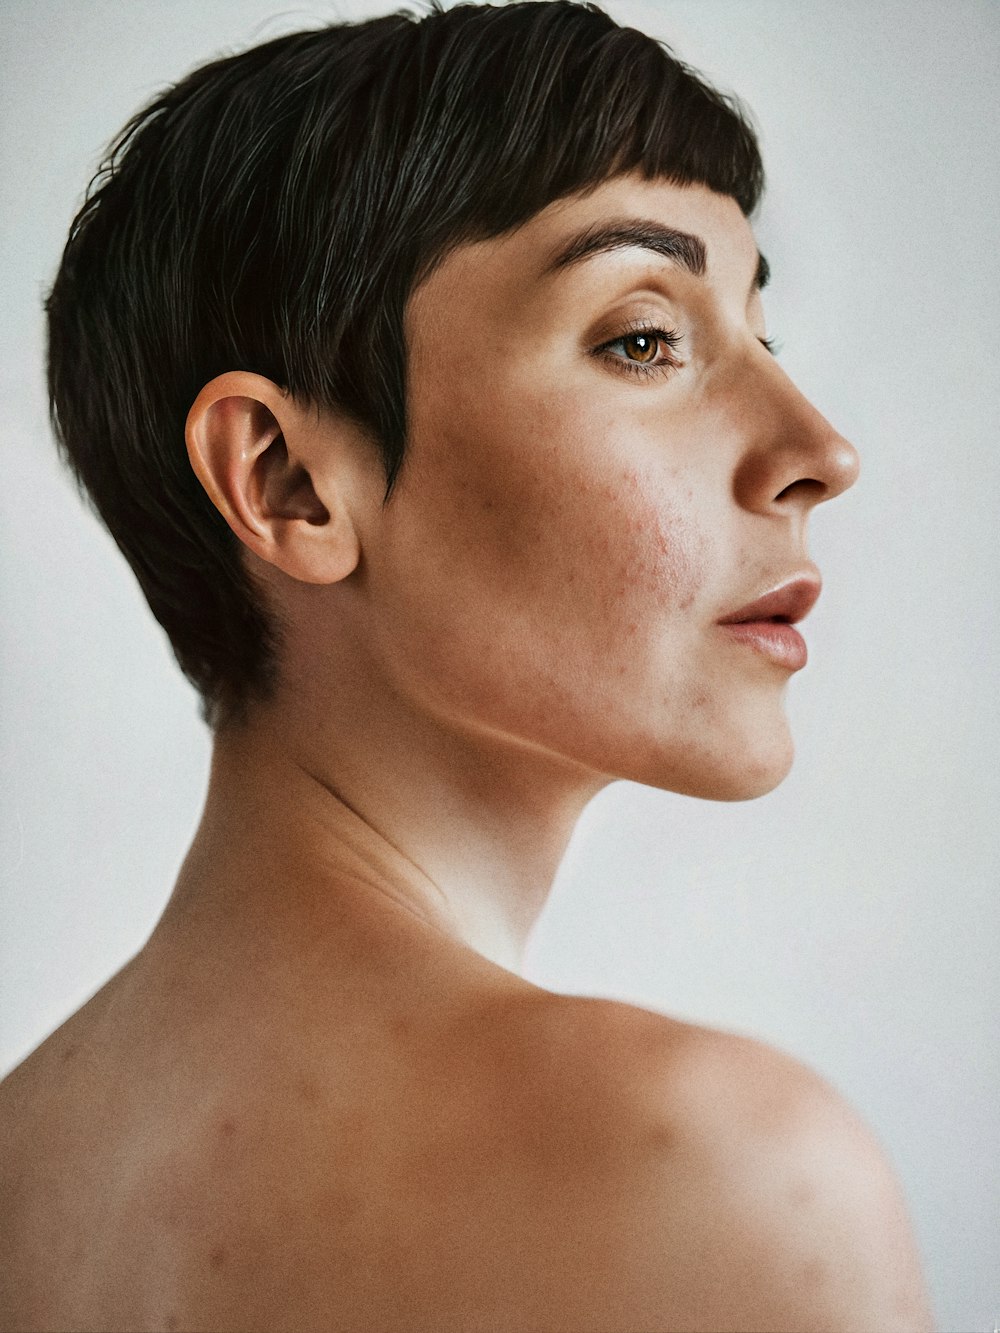 KI-generiertes Porträt eines Models mit kurzen dunklen Haaren und nackten Schultern